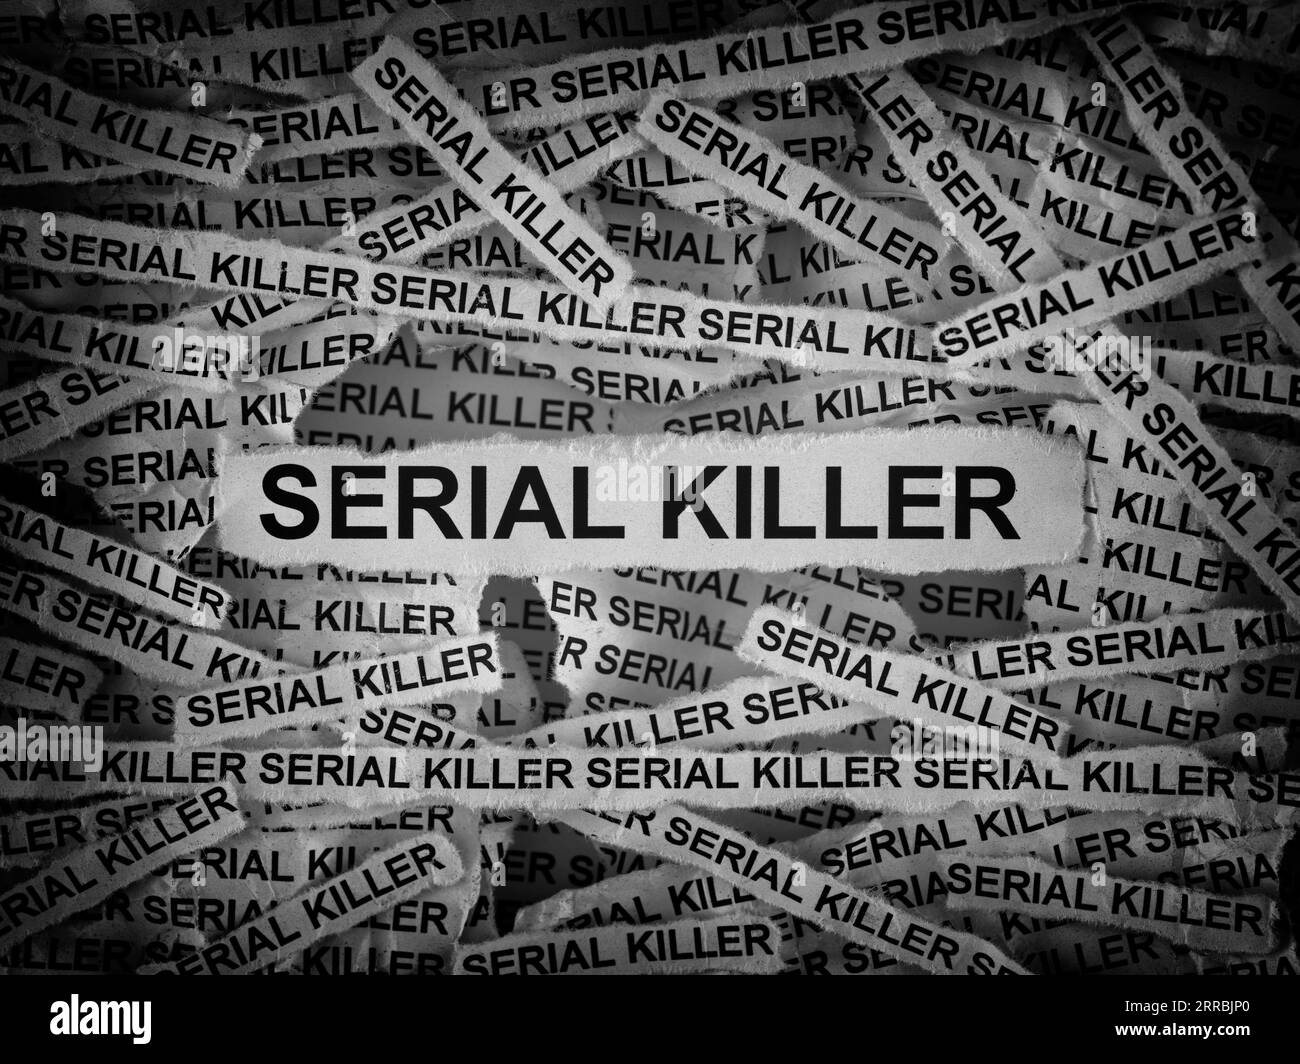 Bandes de journaux avec les mots Serial Killer tapés dessus. Noir et blanc. Gros plan. Banque D'Images